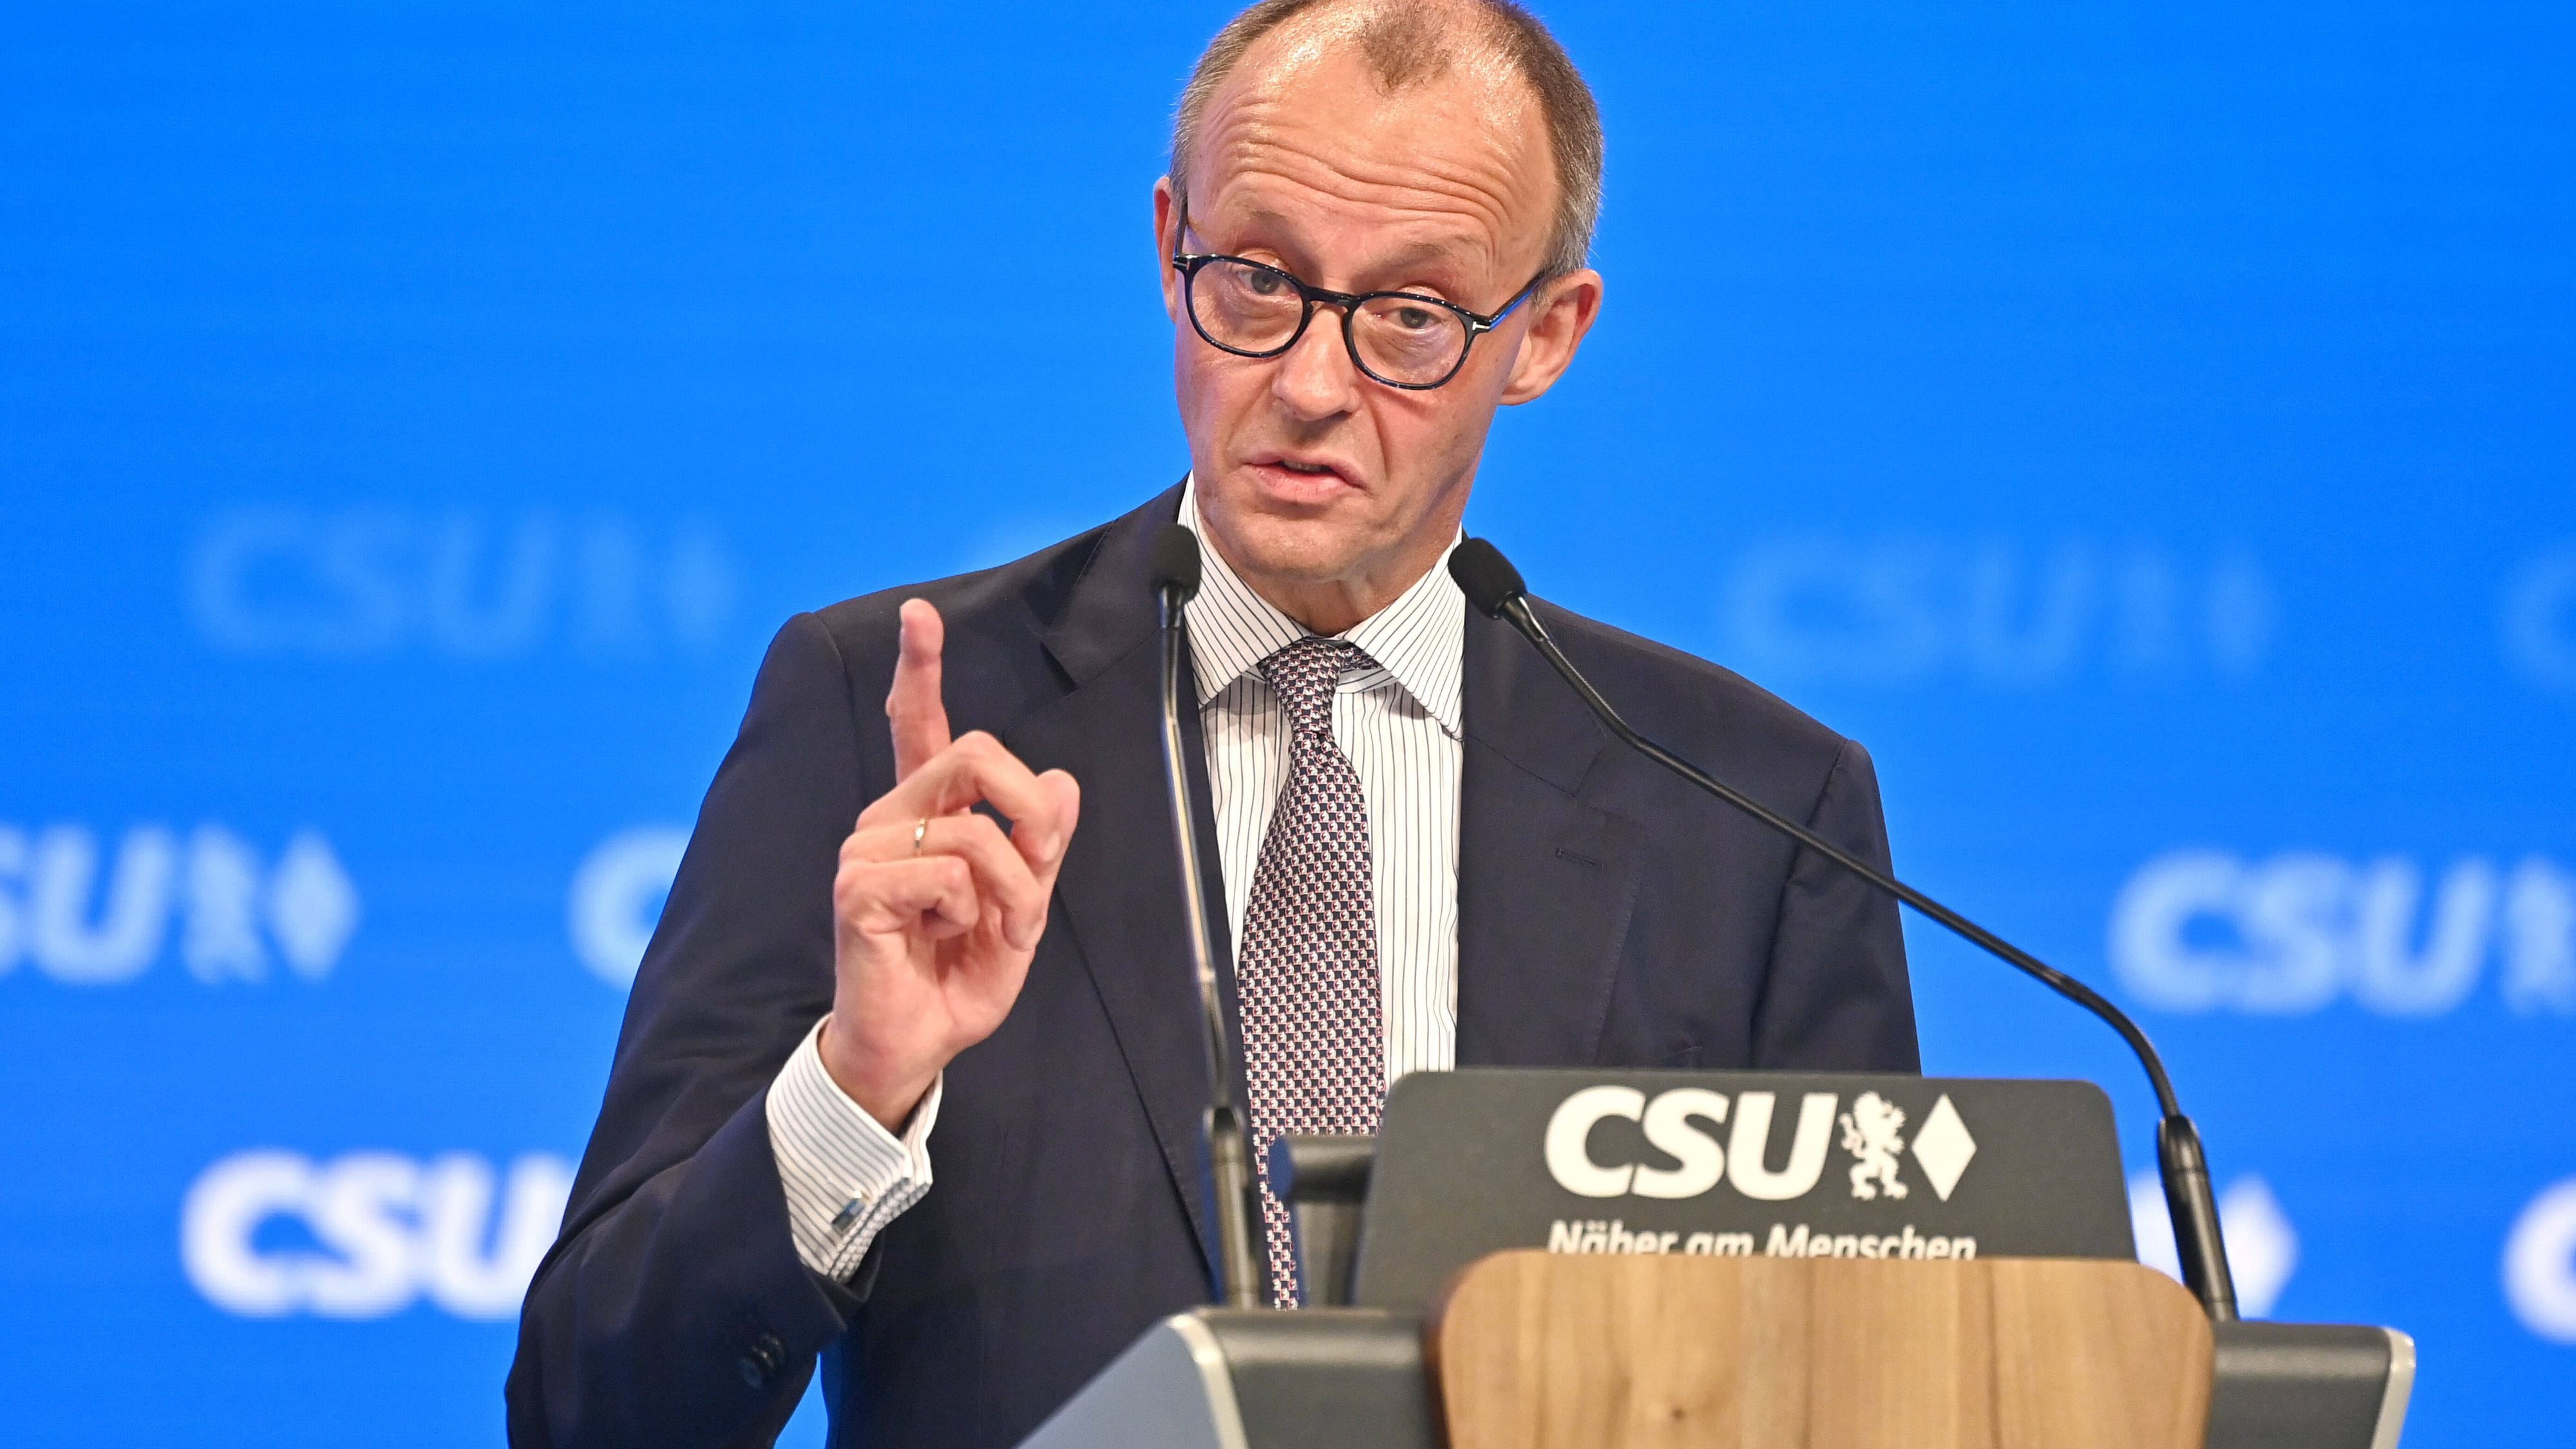 Bürgergeld: CDU-Chef Merz sieht darin Schritt zu bedingungslosem Grundeinkommen